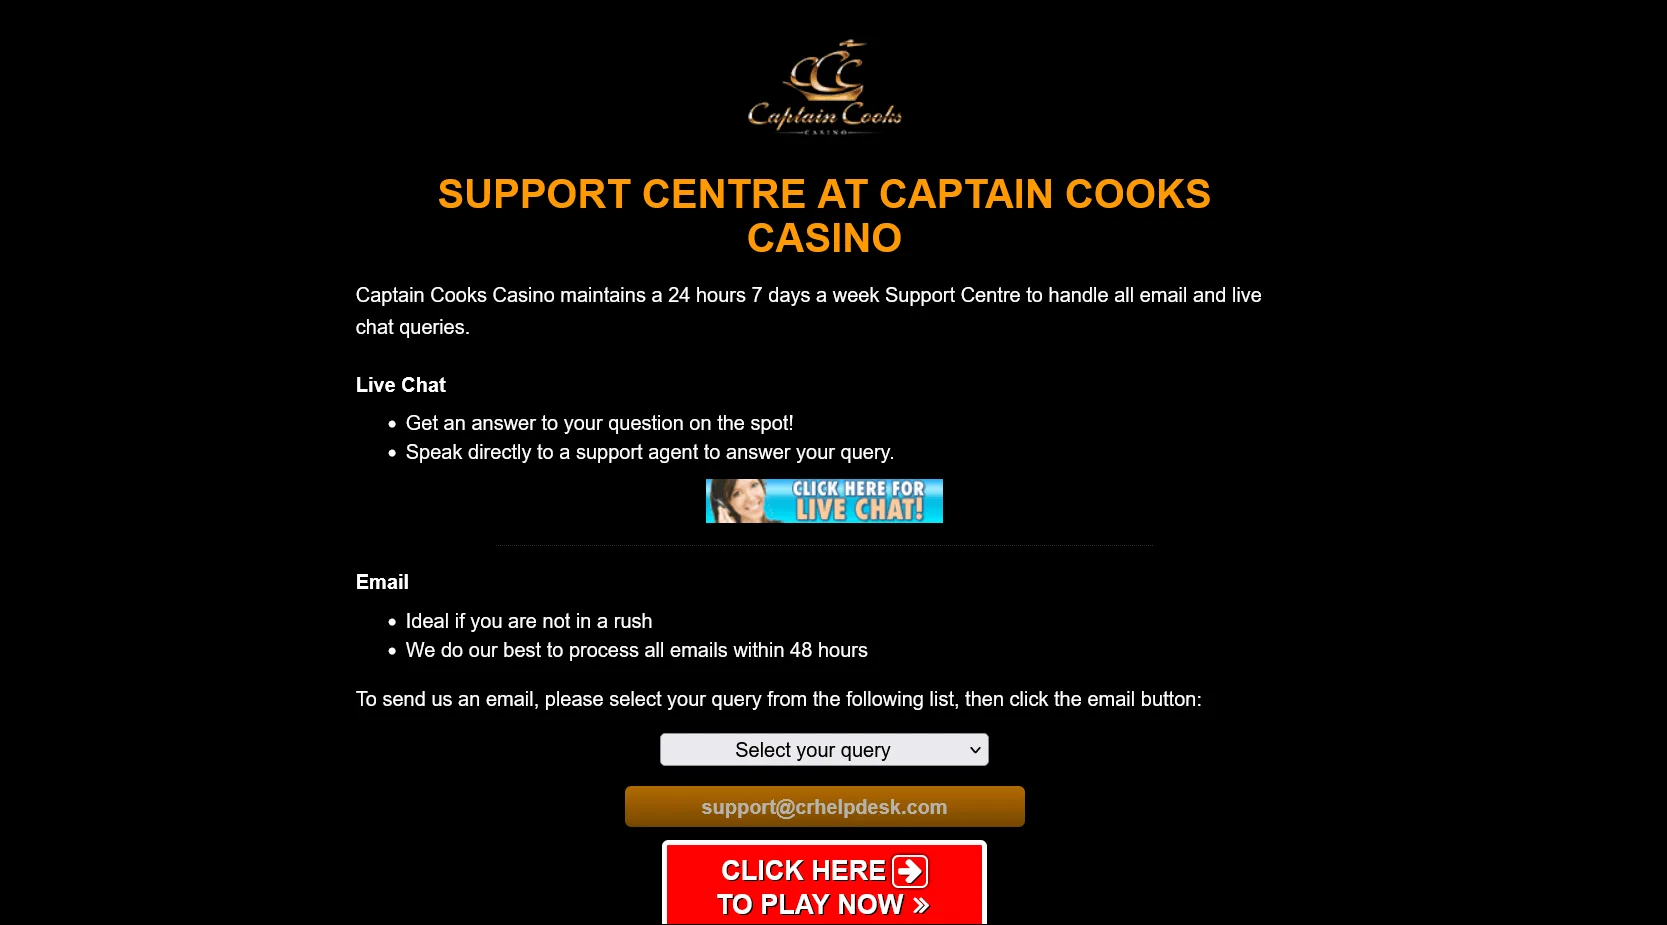 Transacciones en Captain Cooks Casino